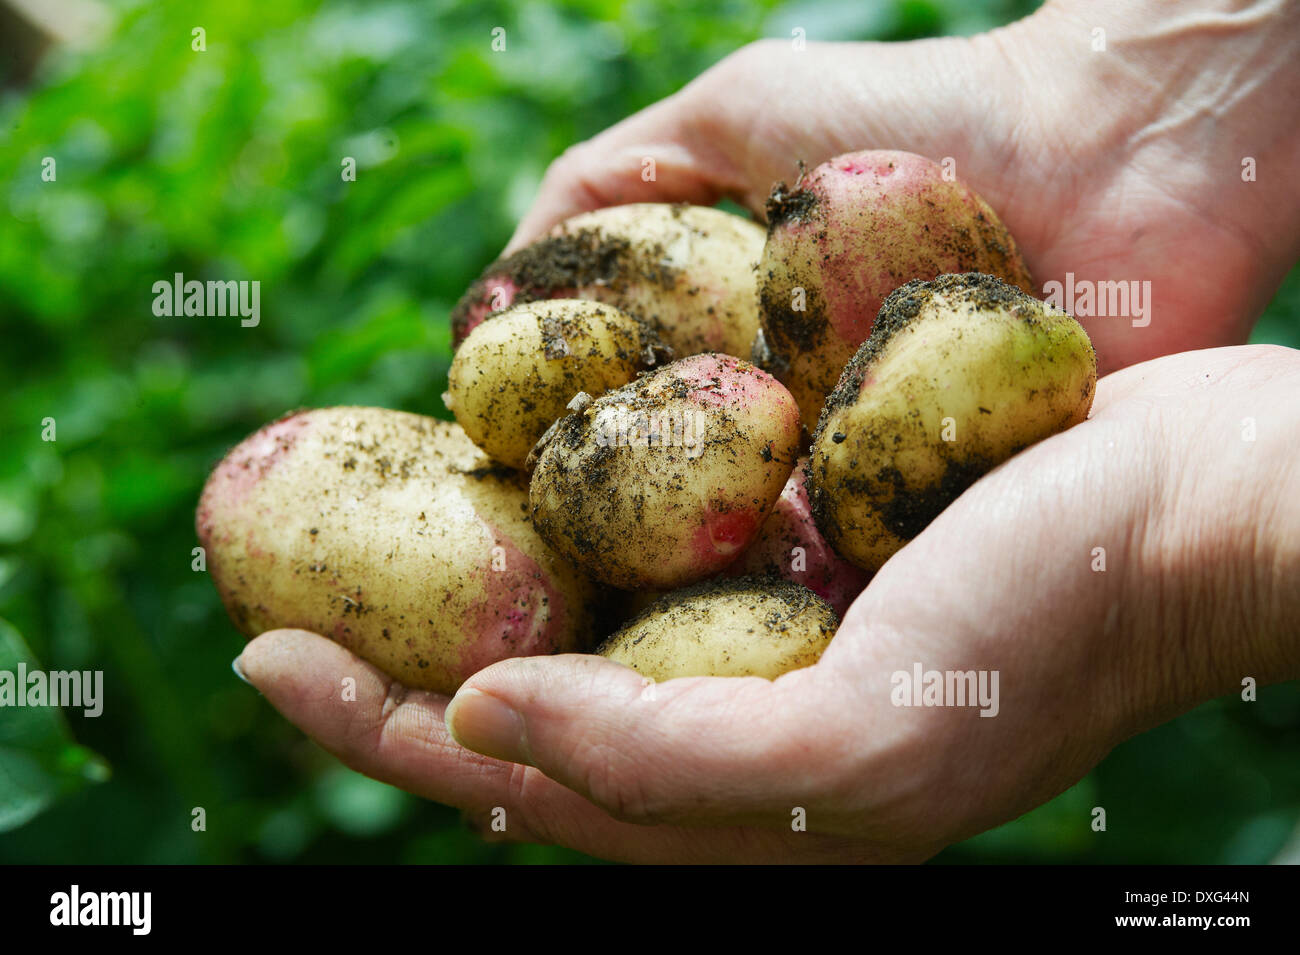 Homme creuser vers le haut des pommes de terre dans le jardin de légumes Banque D'Images